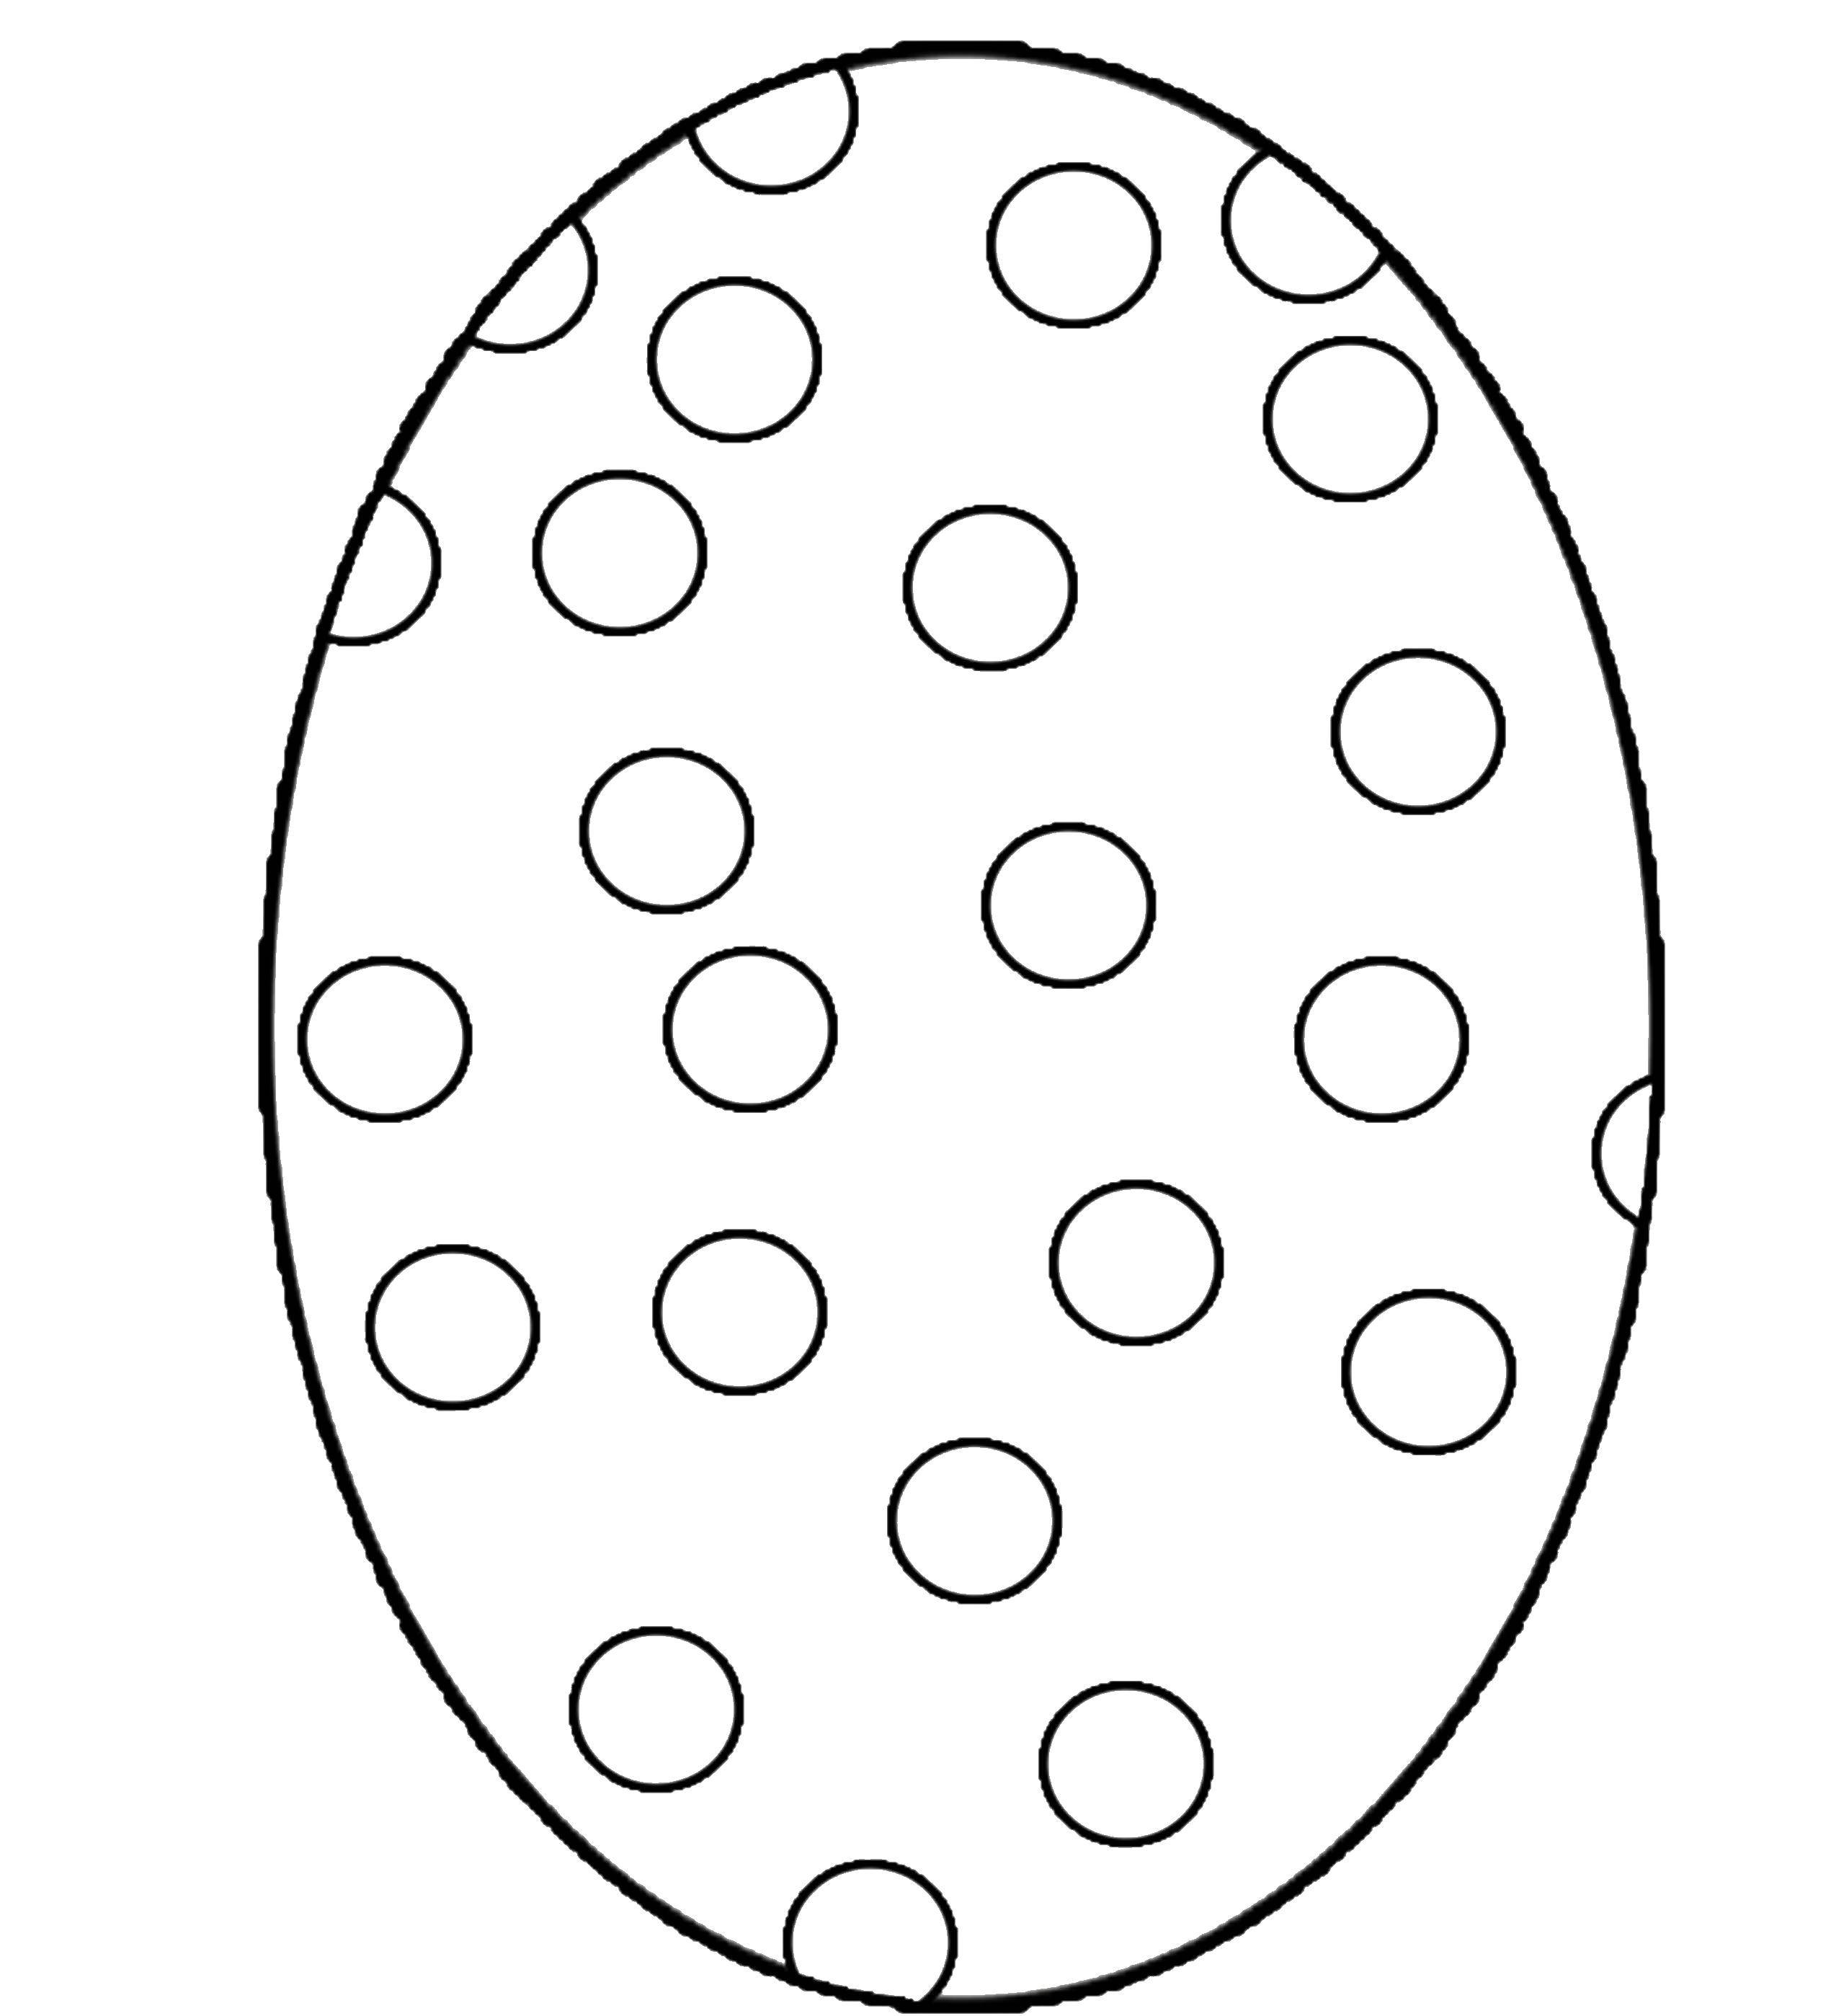 Название: Раскраска Яйцо в крапинку.. Категория: Узоры для раскрашивания яиц. Теги: Пасха, яйца, узоры.